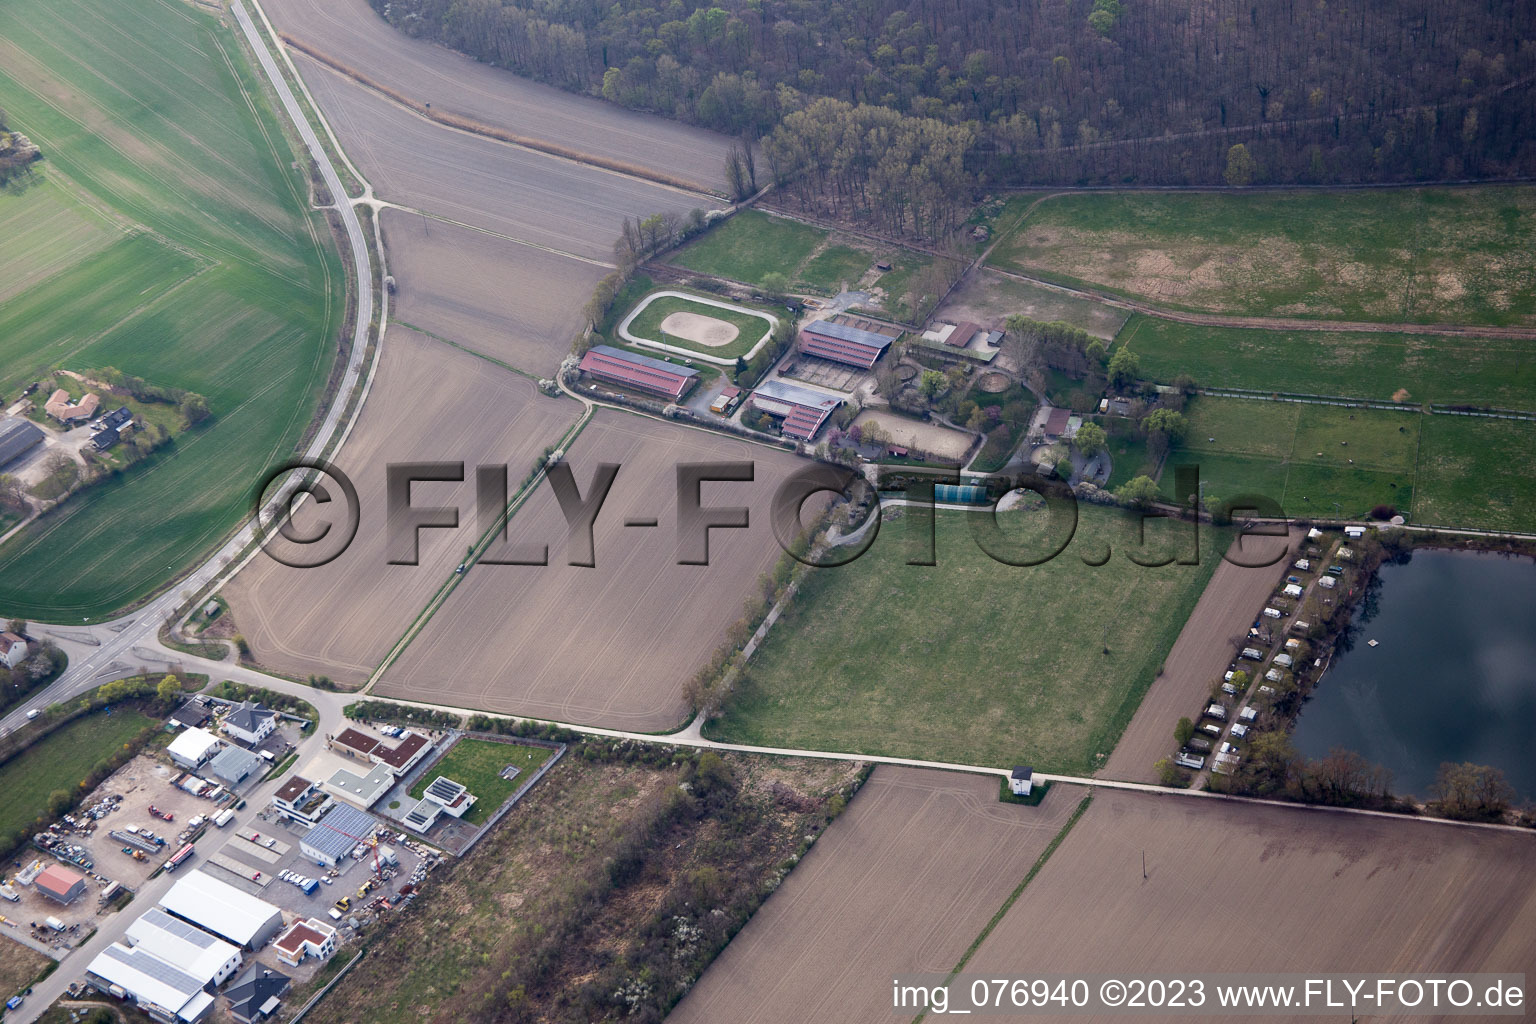 Vue aérienne de Rexhof à Altrip dans le département Rhénanie-Palatinat, Allemagne